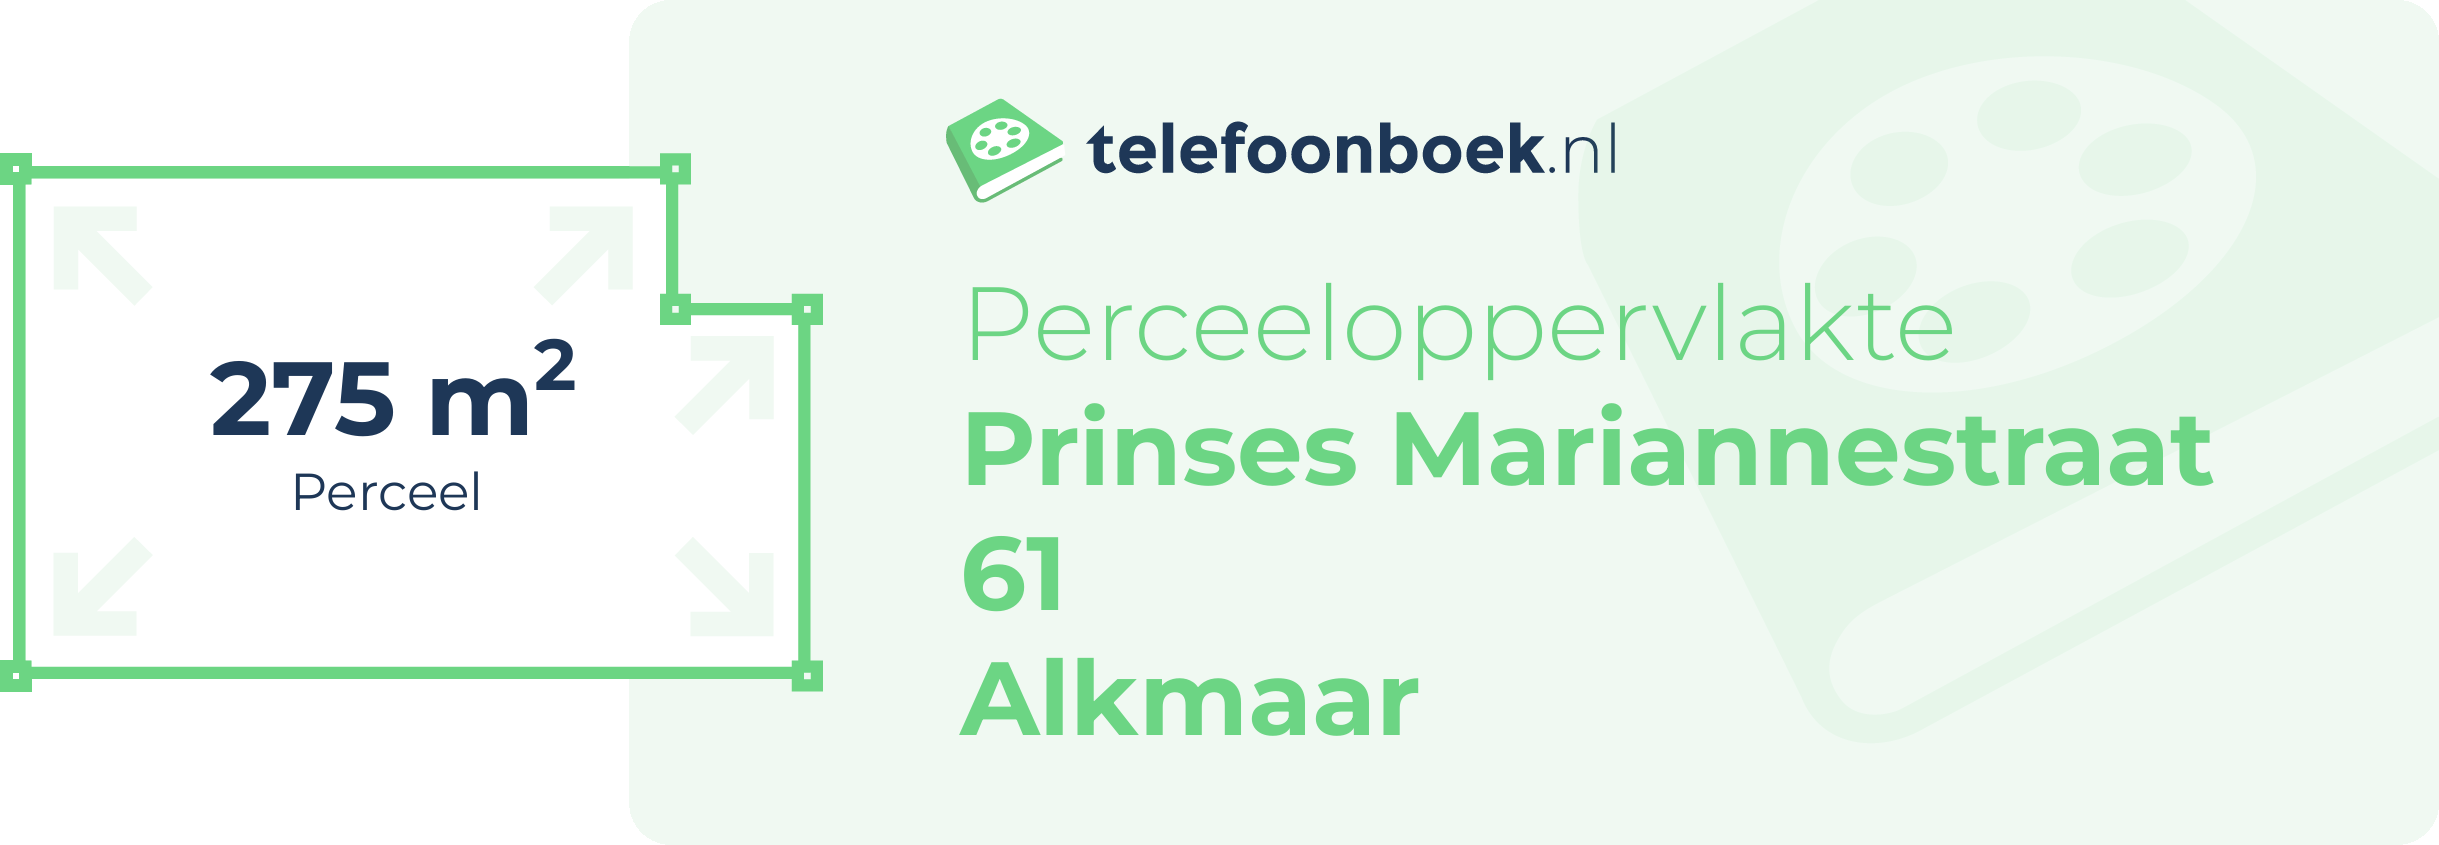 Perceeloppervlakte Prinses Mariannestraat 61 Alkmaar